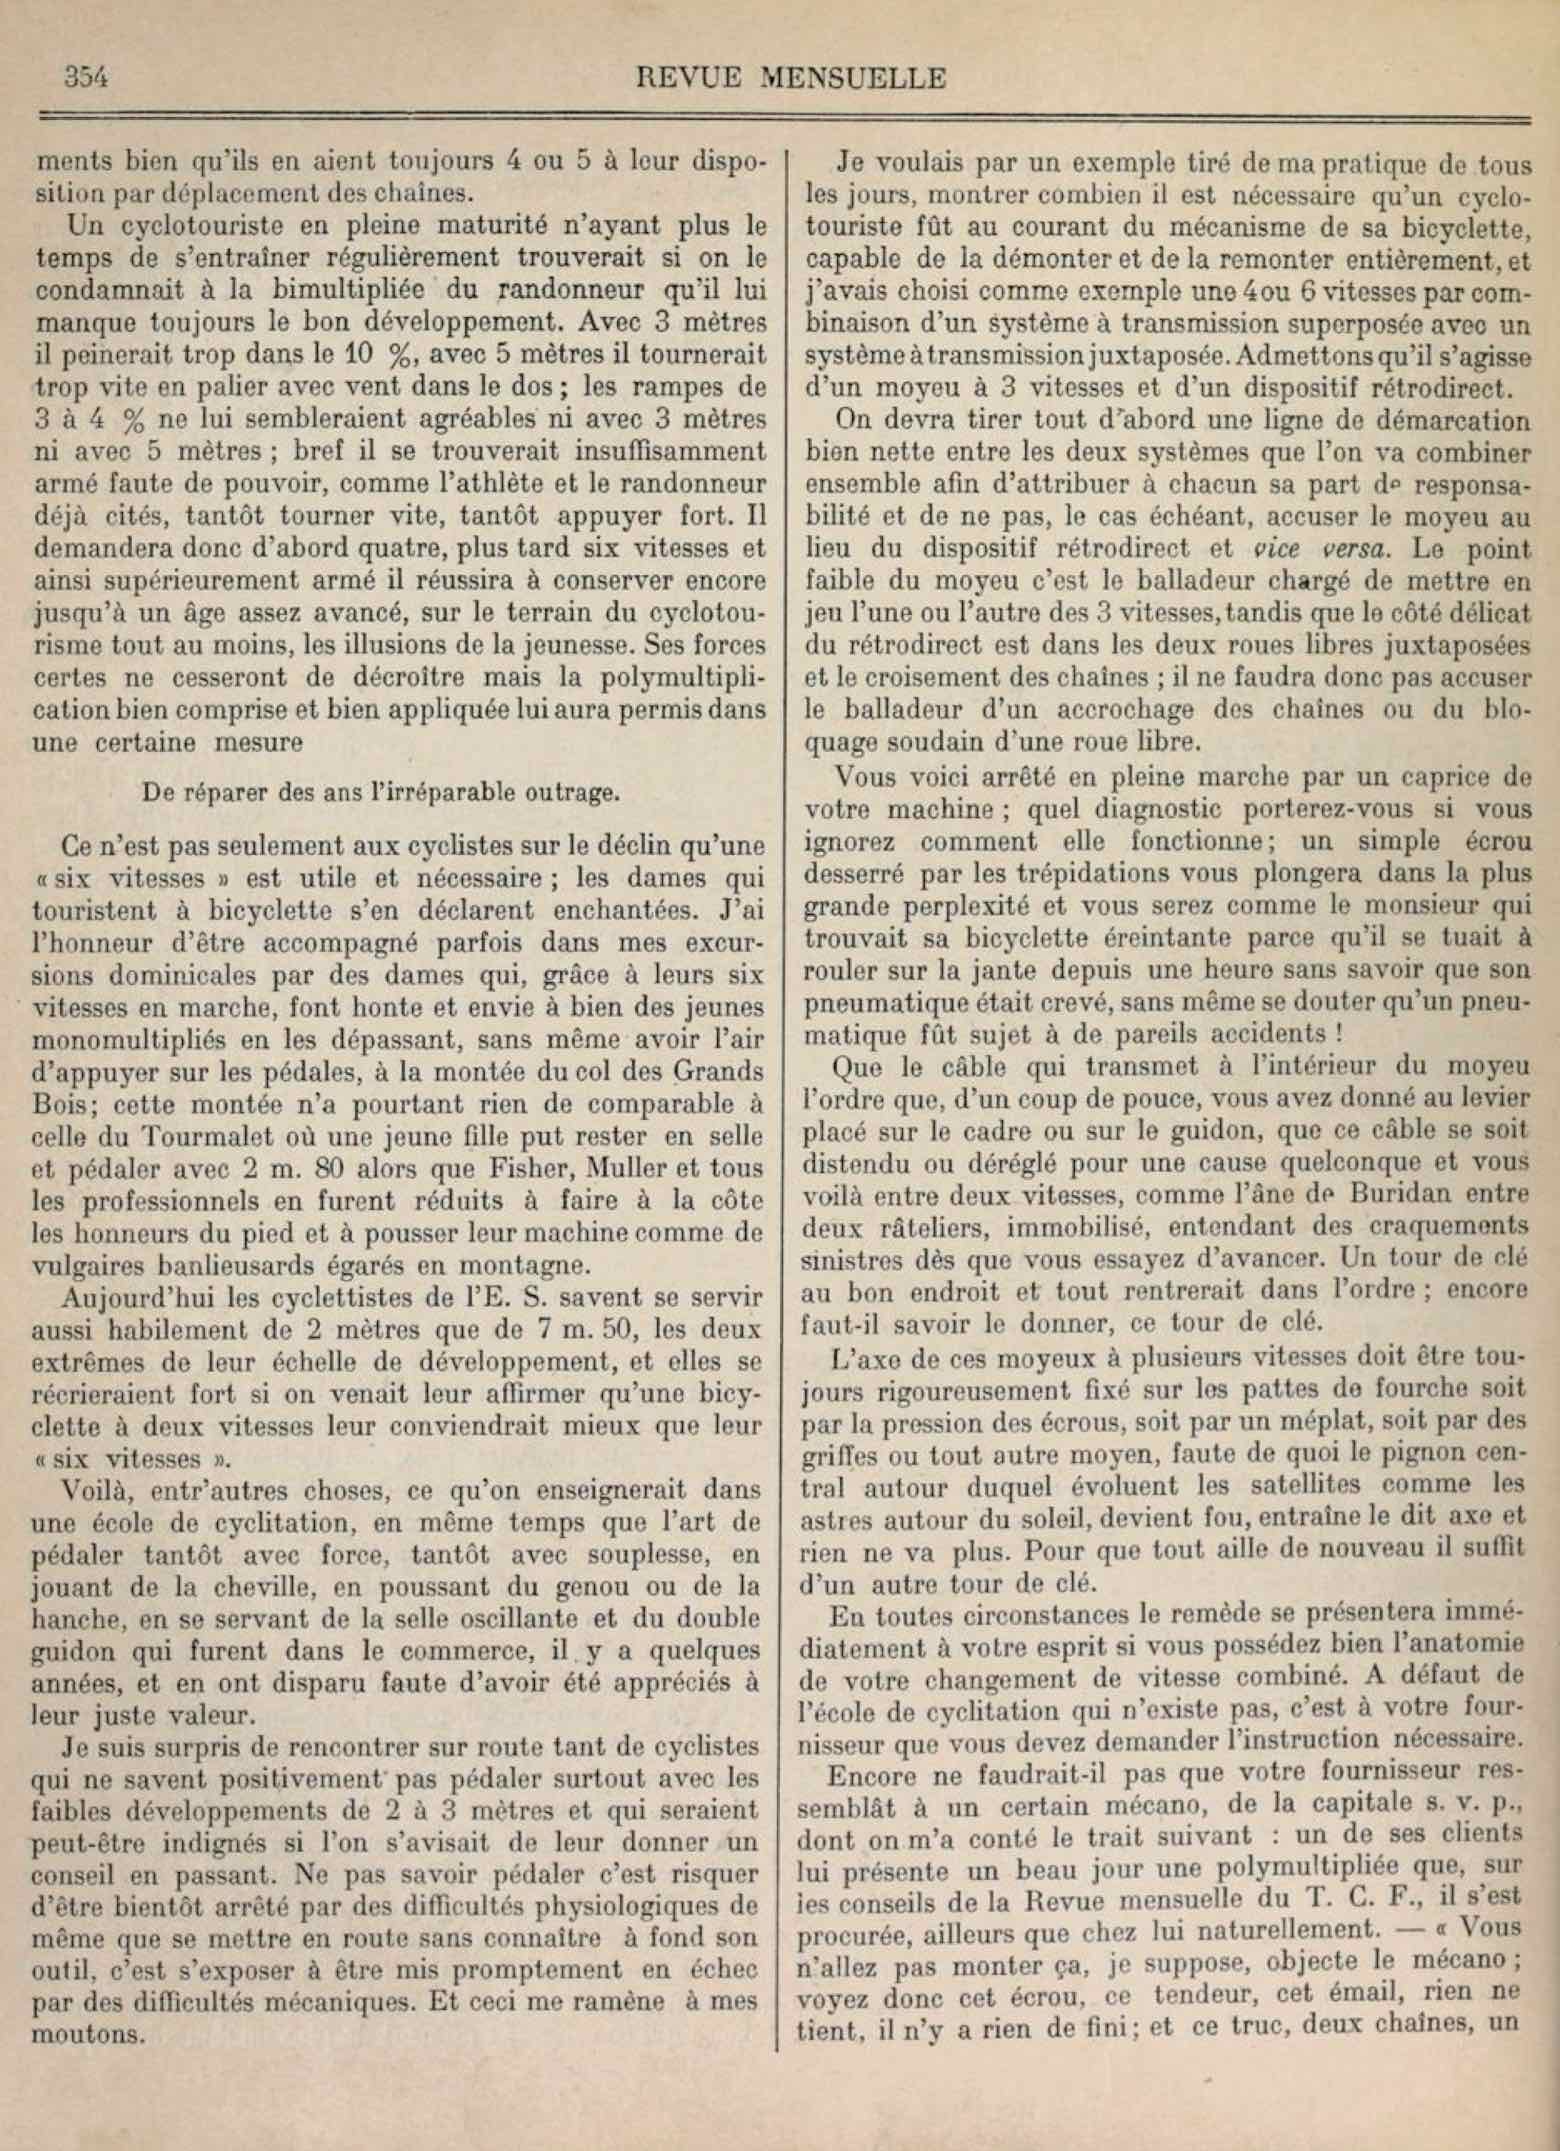 T.C.F. Revue Mensuelle August 1909 - Ecoles de Cyclitation scan 2 main image